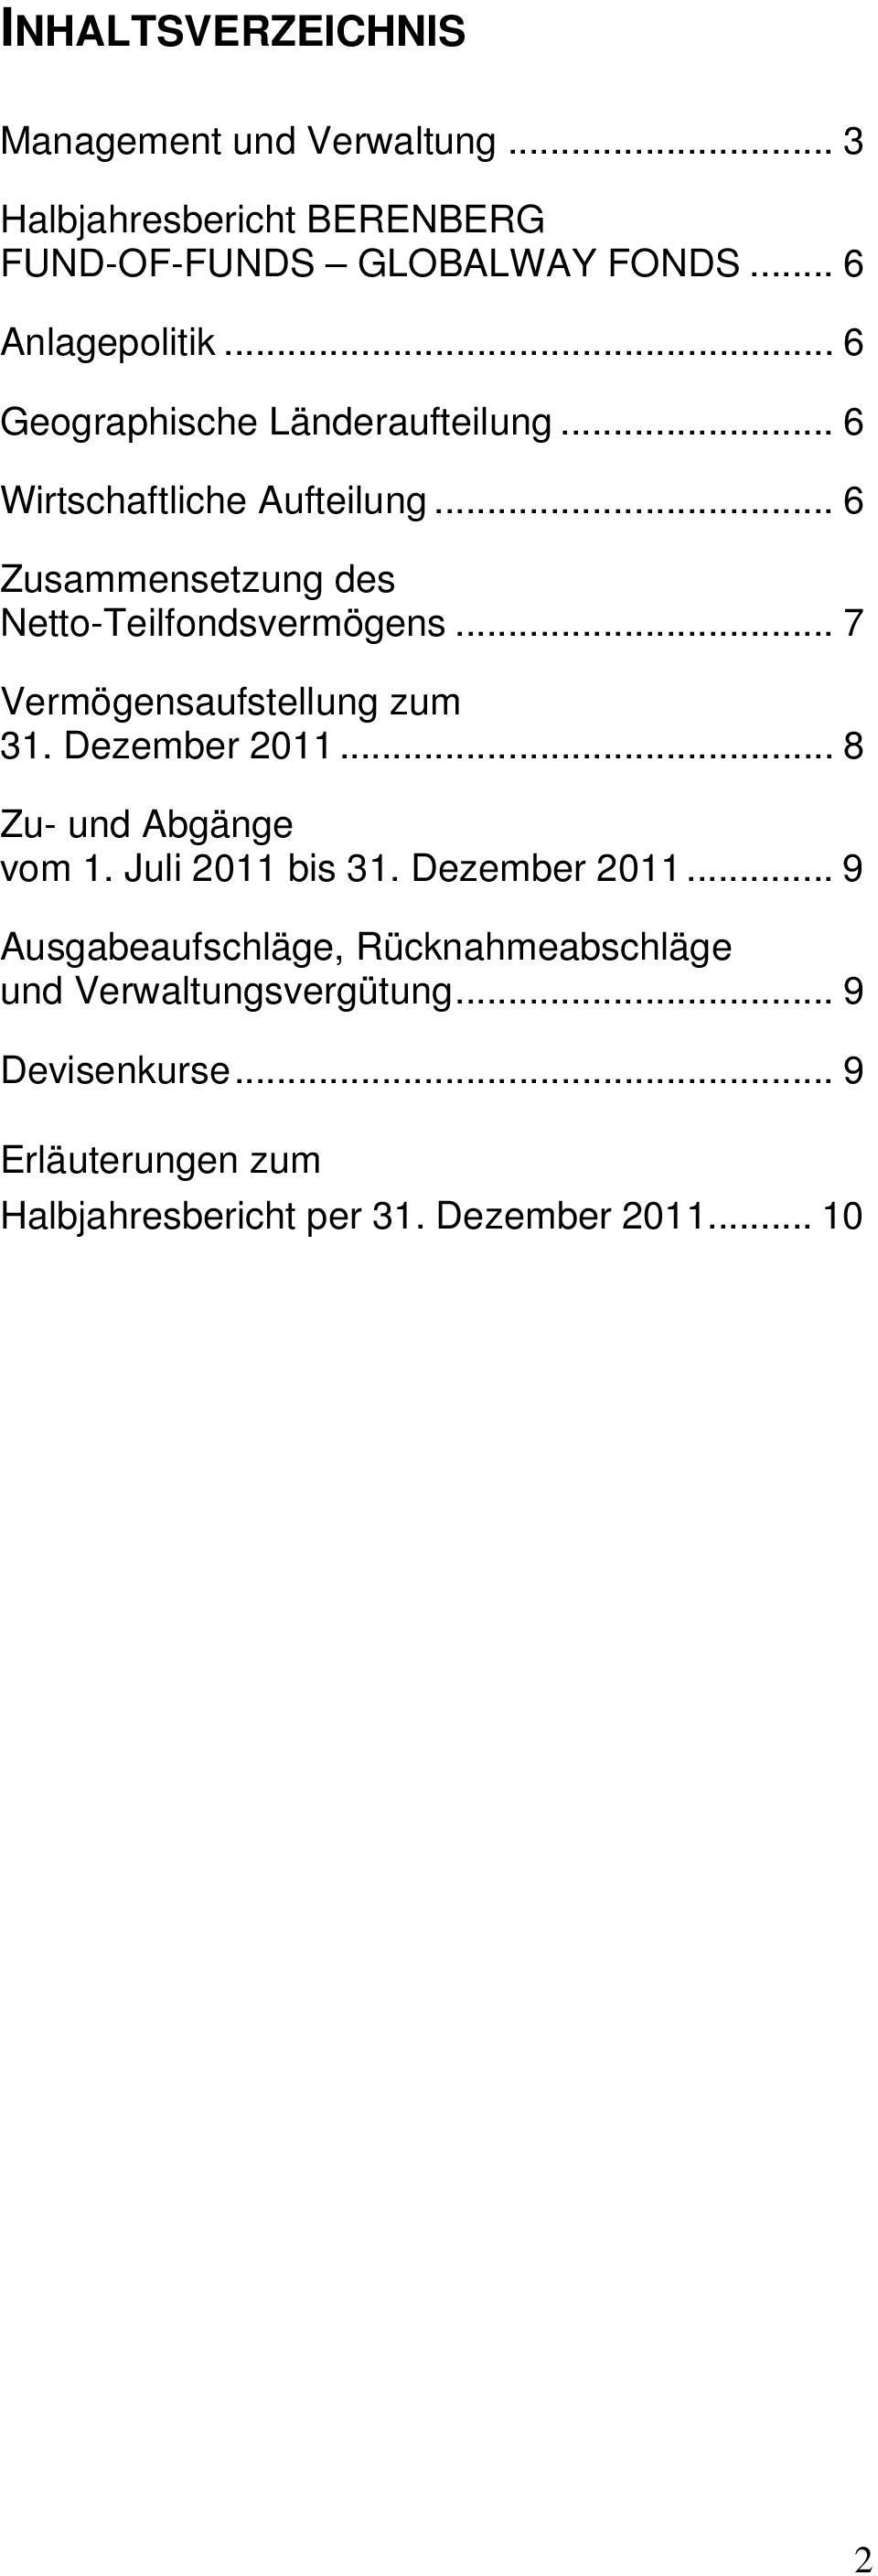 .. 7 Vermögensaufstellung zum 31. Dezember 2011... 8 Zu- und Abgänge vom 1. Juli 2011 bis 31. Dezember 2011... 9 Ausgabeaufschläge, Rücknahmeabschläge und Verwaltungsvergütung.